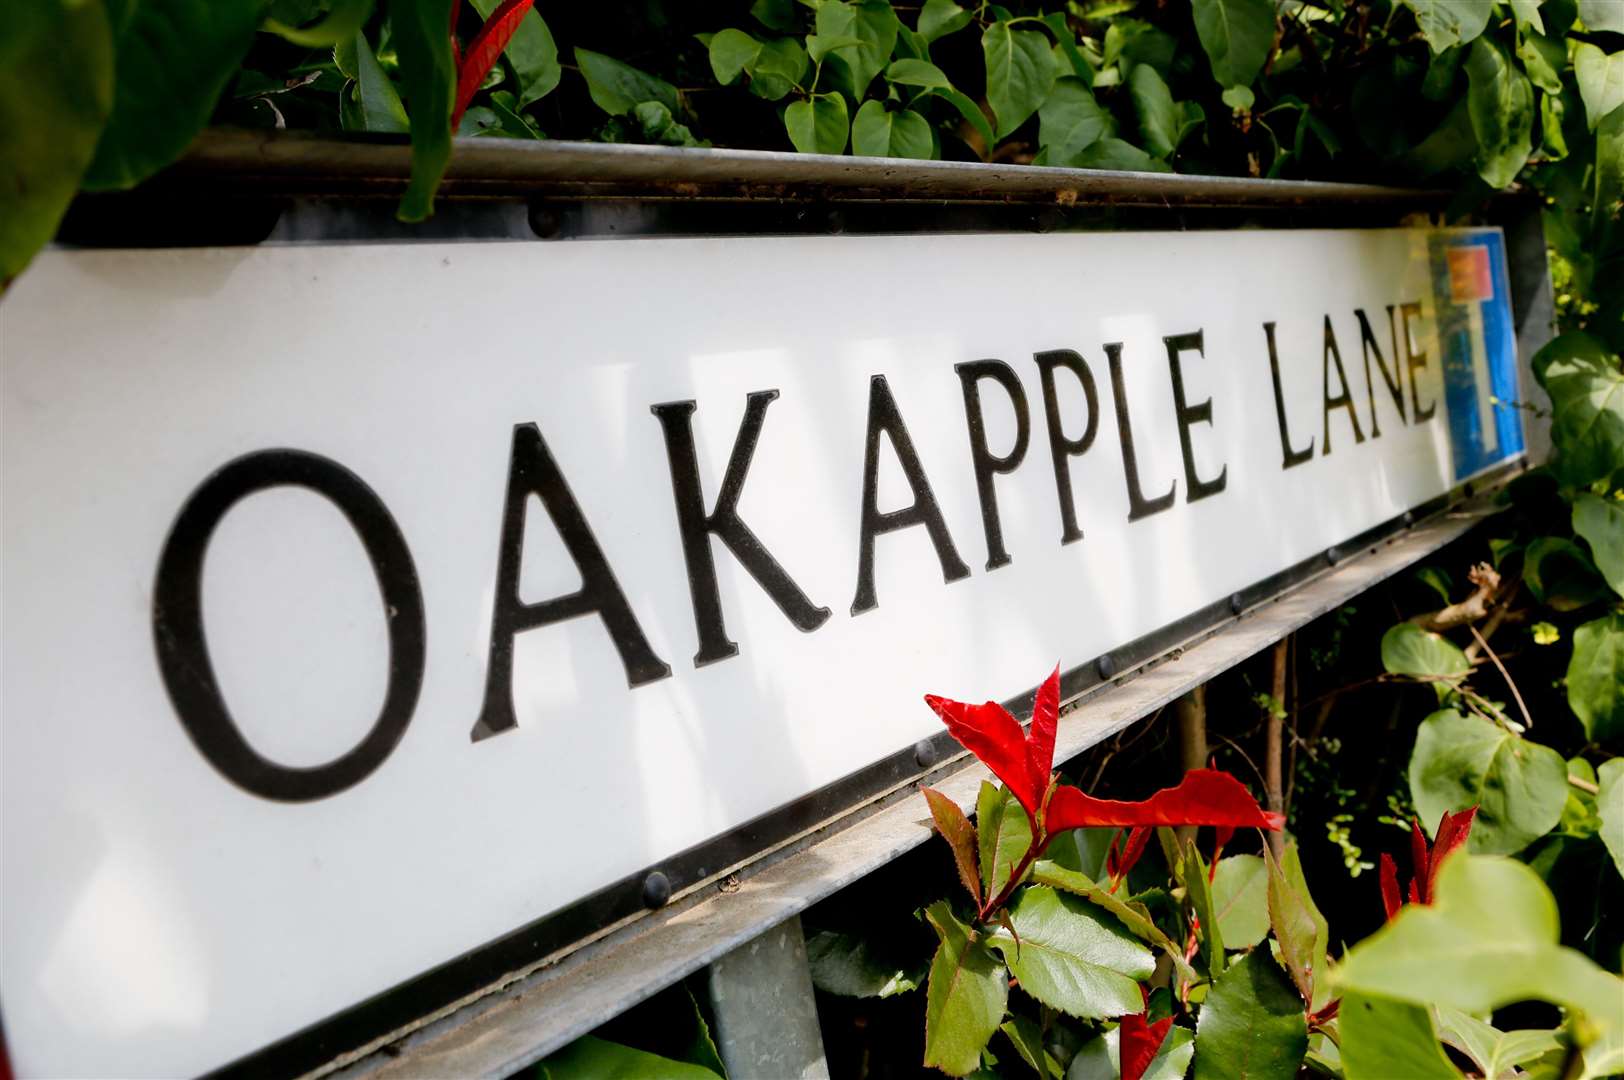 Oakapple Lane in Barming